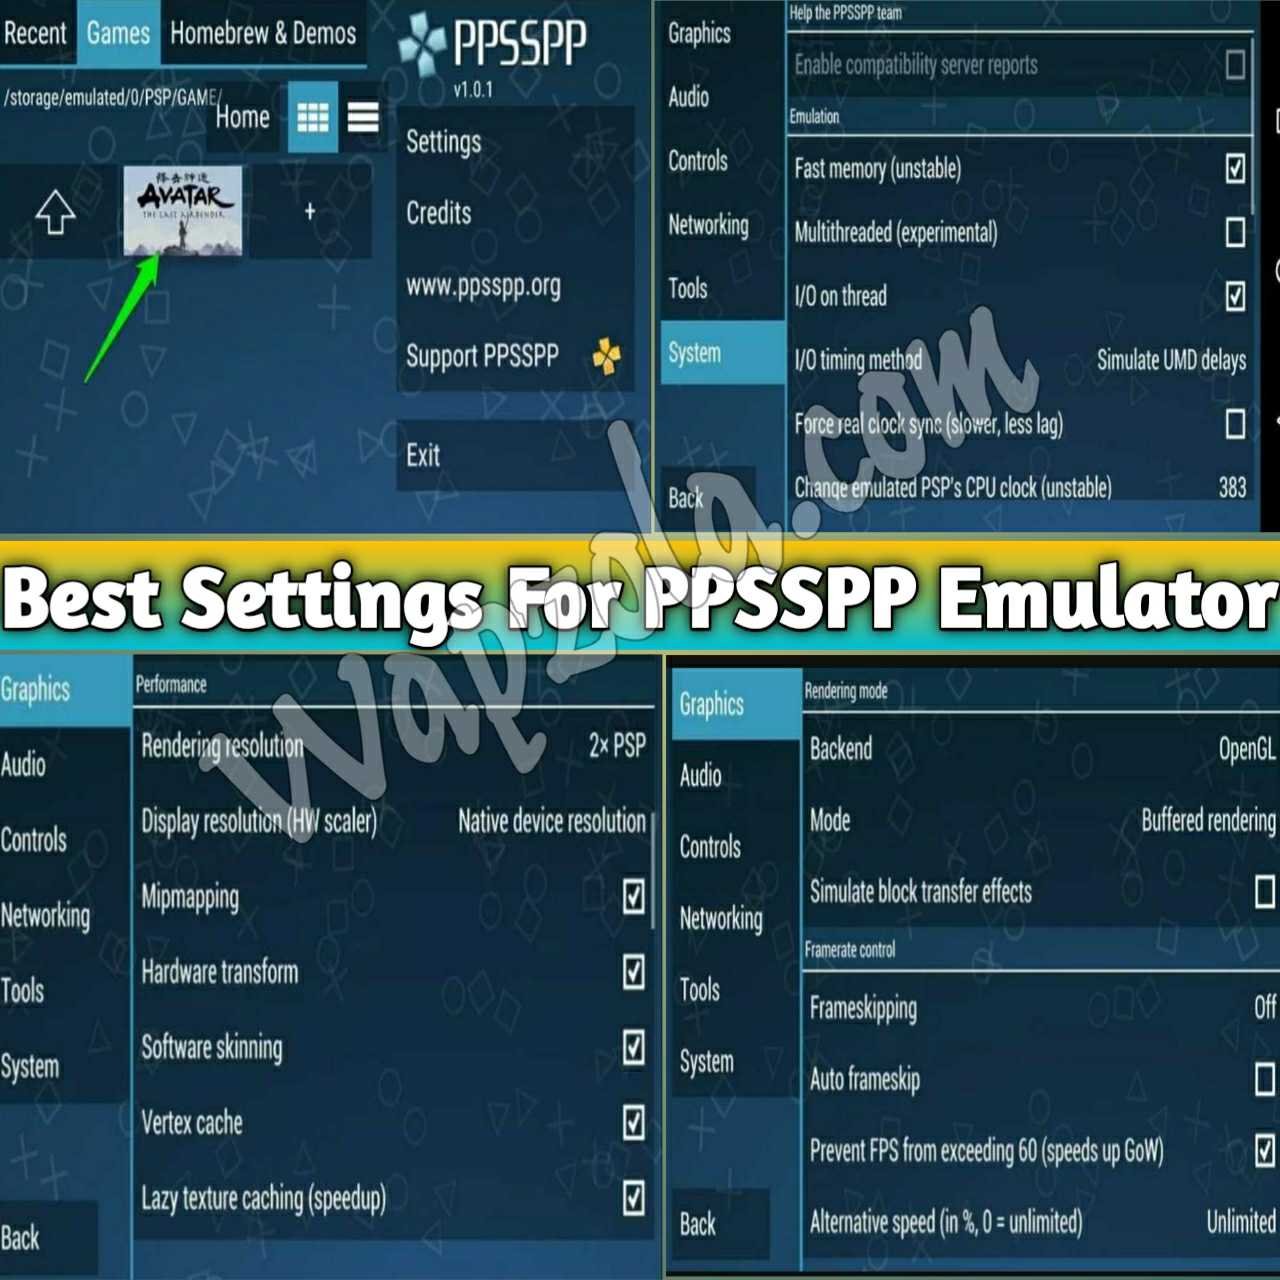 En este momento estás viendo Los mejores ajustes para el emulador de PPSSPP/PSP en los teléfonos inteligentes Android y en el PC (100% Lag arreglar y resolver los problemas de sonido)